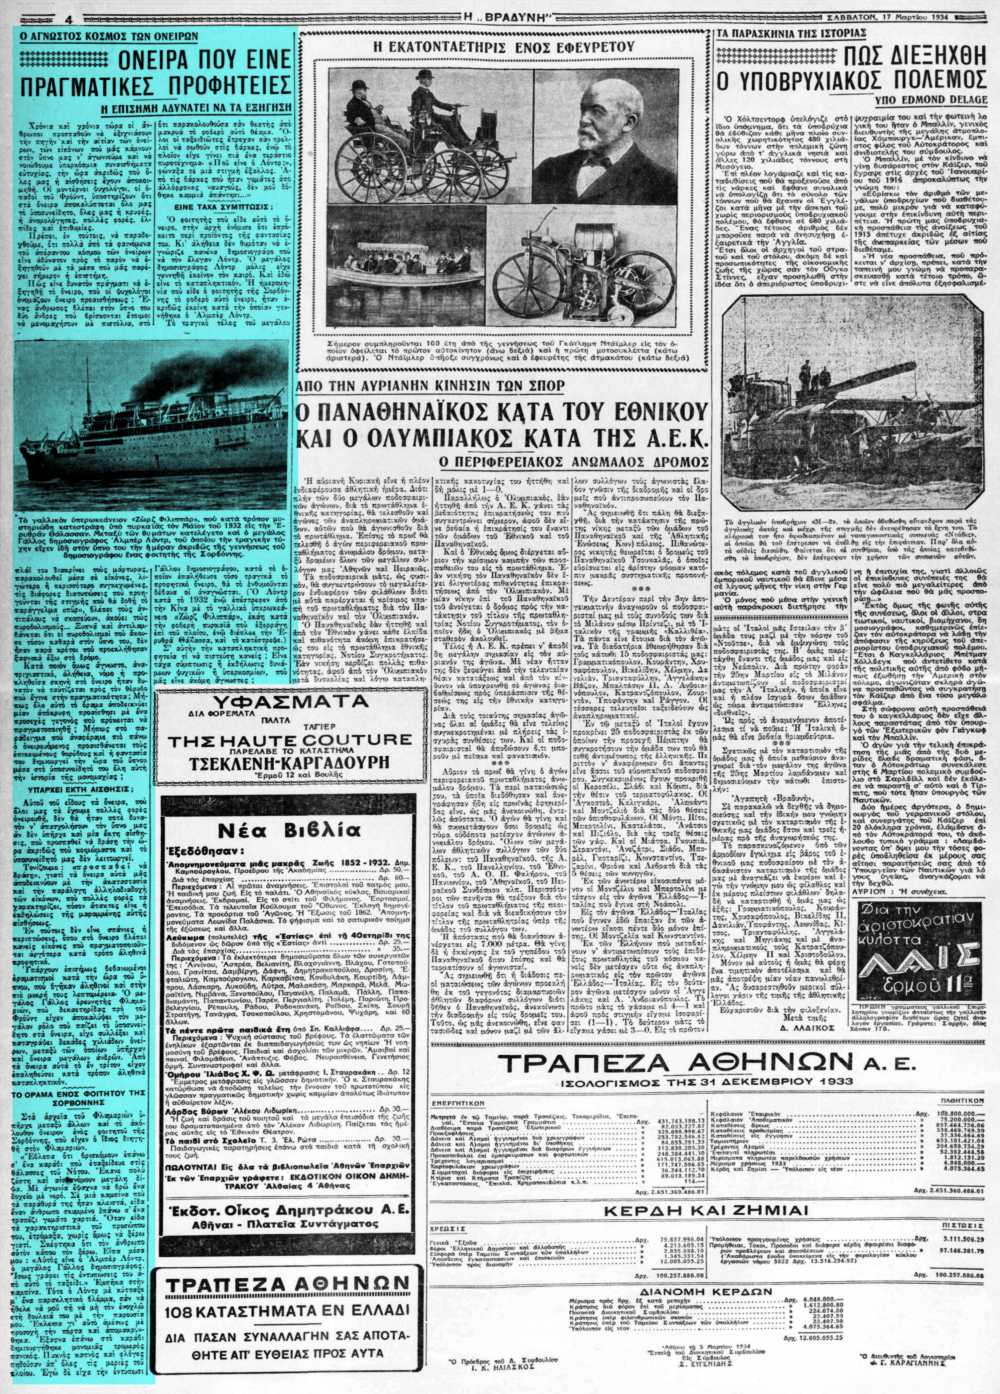 Το άρθρο, όπως δημοσιεύθηκε στην εφημερίδα "Η ΒΡΑΔΥΝΗ", στις 17/03/1934